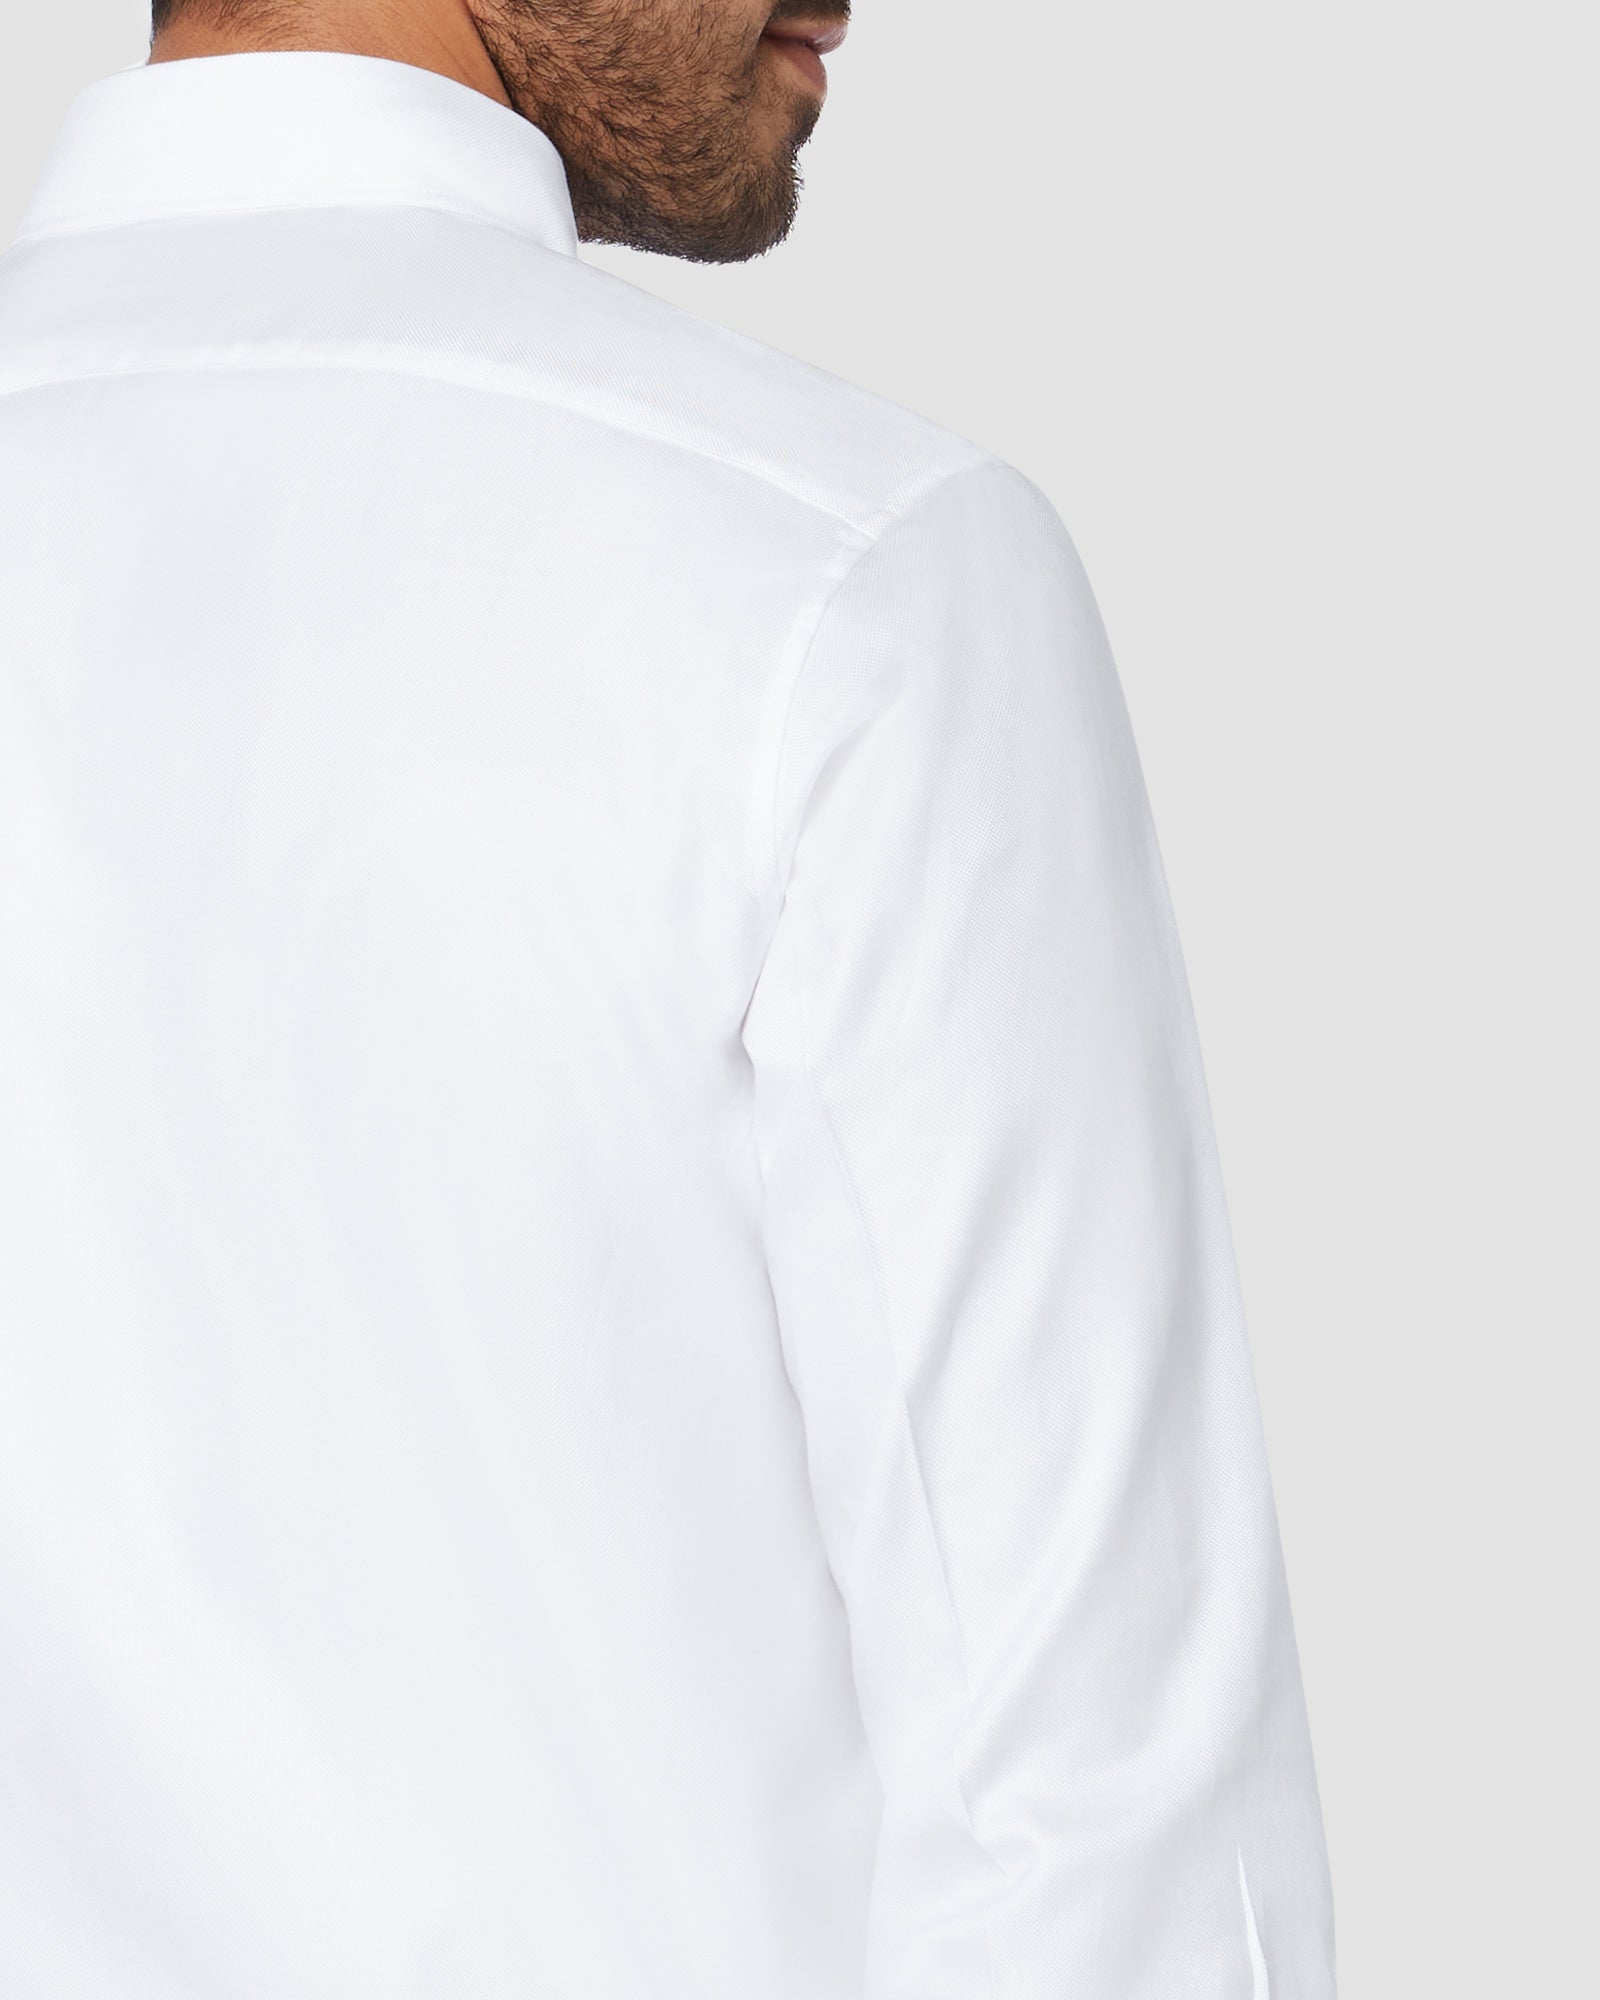 Soktas Cloud White Royal Oxford Shirt